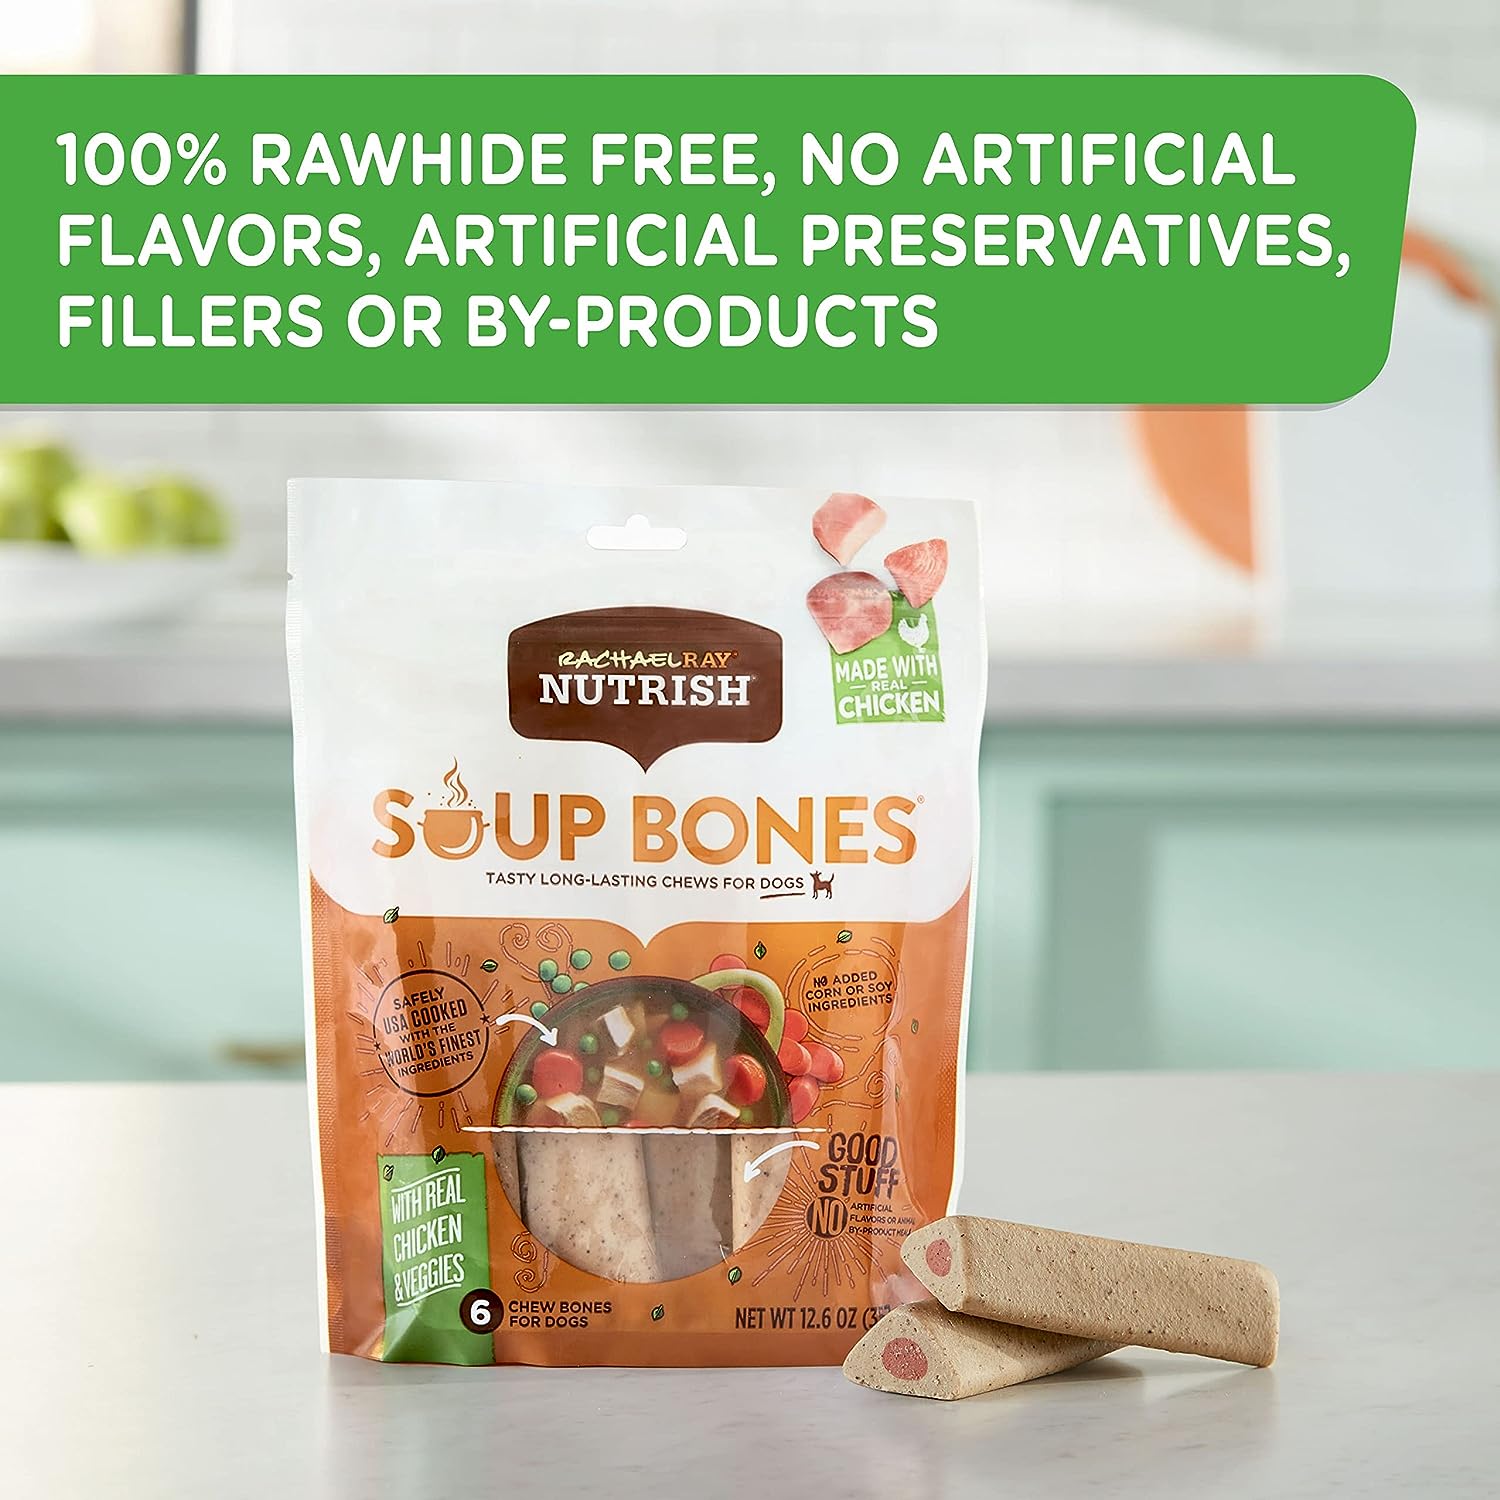 Rachael Ray Nutrish Soup Bones Dog Treats, Chicken & Veggies Flavor, 11 Bones : Pet Supplies